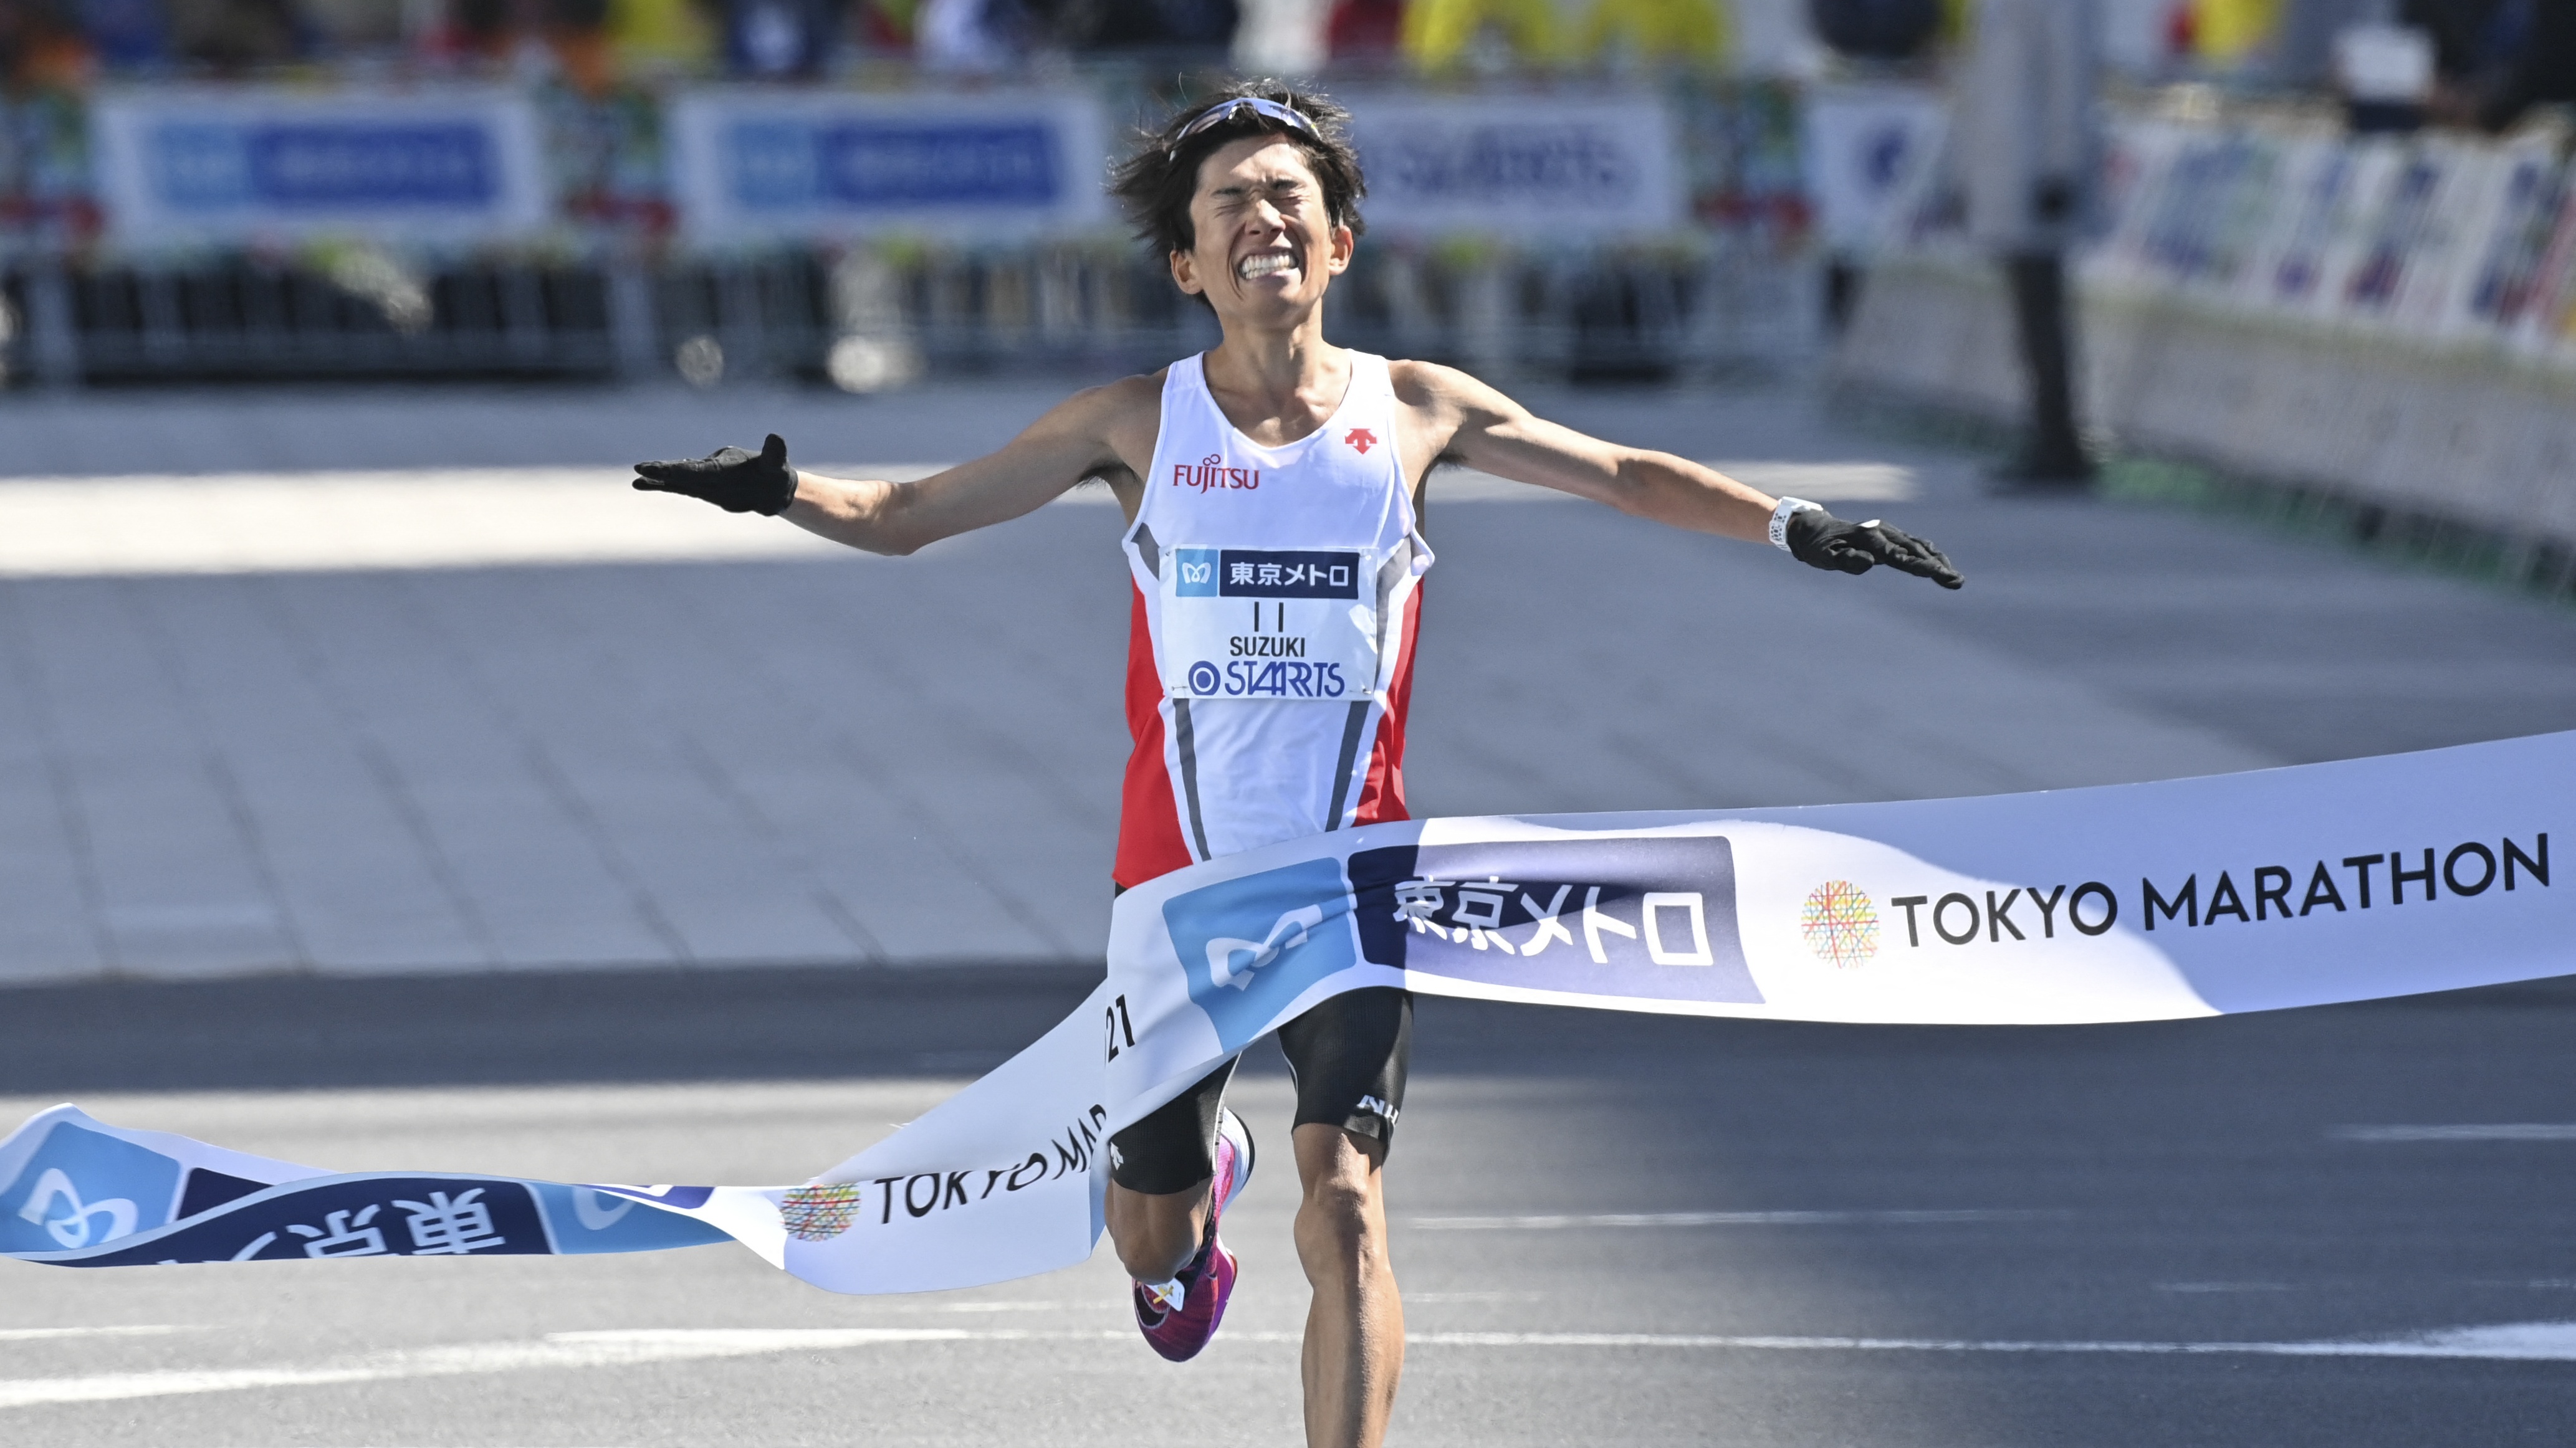 How to Watch Tokyo Marathon?